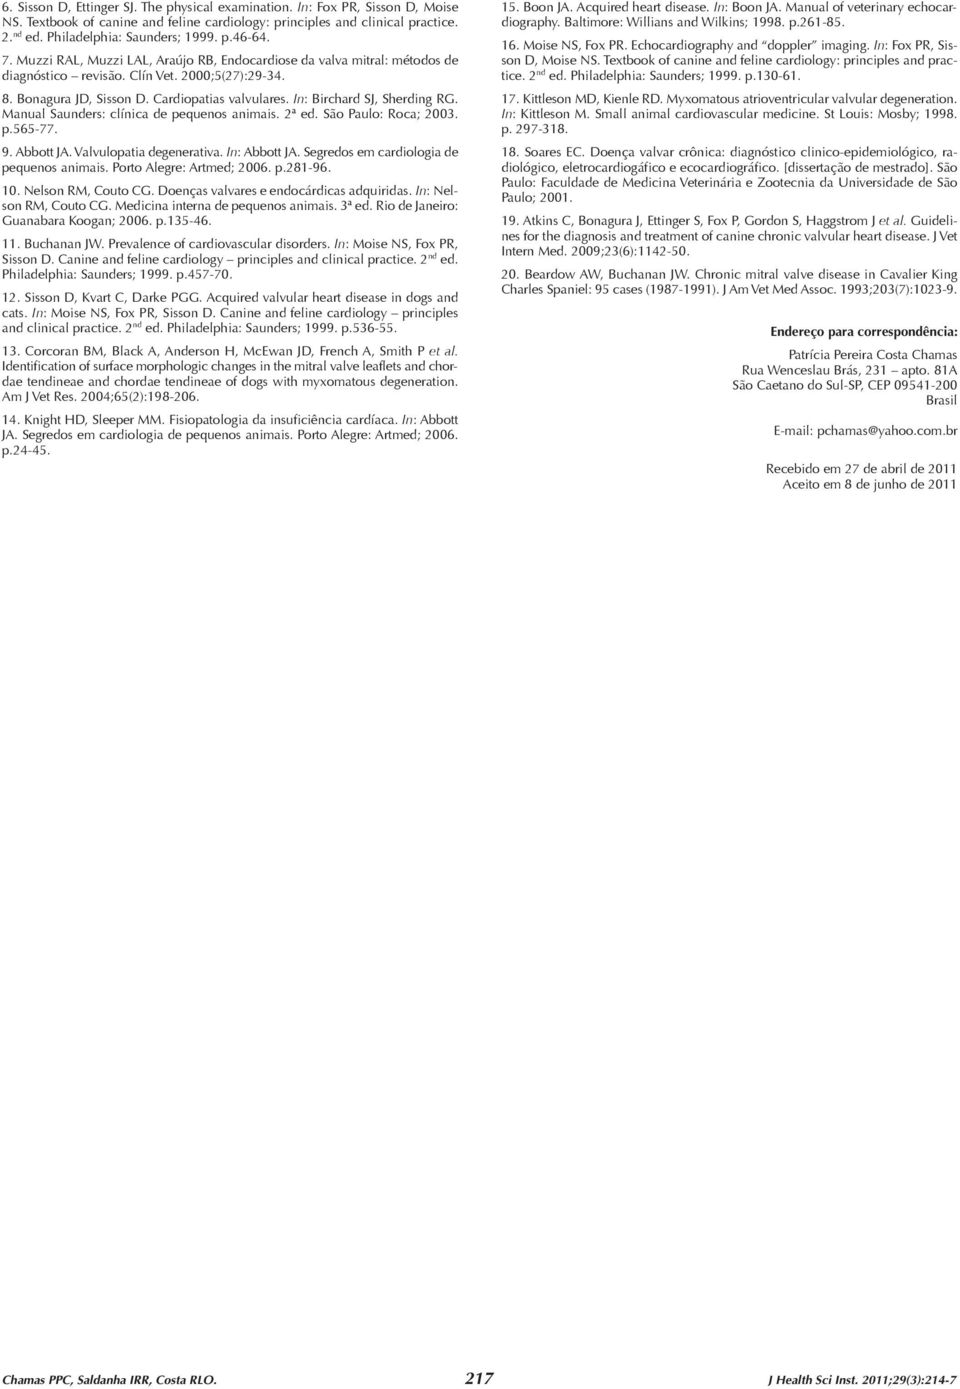 In: Birchard SJ, Sherding RG. Manual Saunders: clínica de pequenos animais. 2ª ed. São Paulo: Roca; 2003. p.565-77. 9. Abbott JA. Valvulopatia degenerativa. In: Abbott JA.